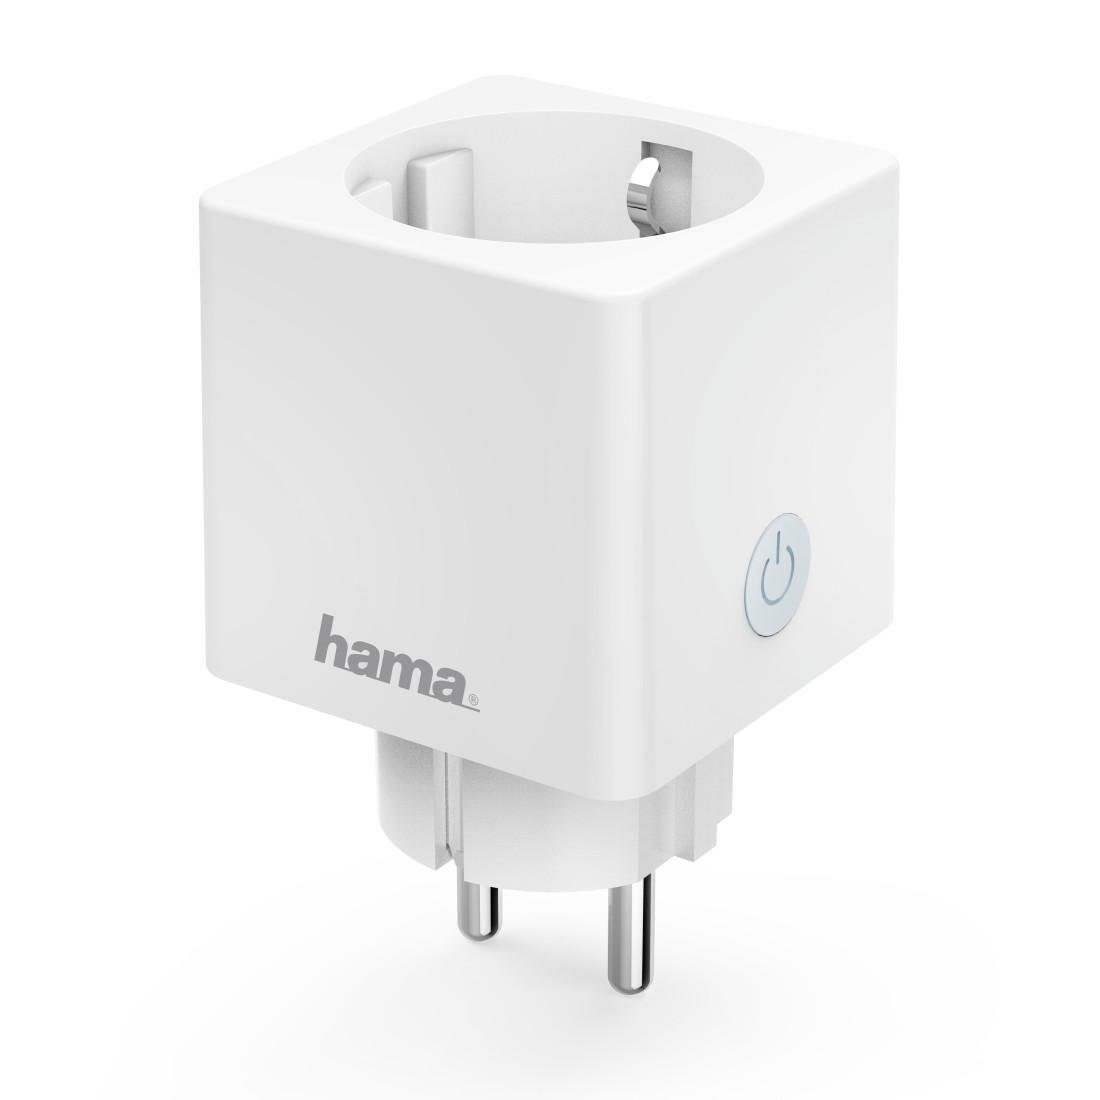 Hama WLAN-Steckdose WLAN Mini Steckdose ohne Hub 3680W, weiß, max. 3680 W, für App-und Sprachsteuerung